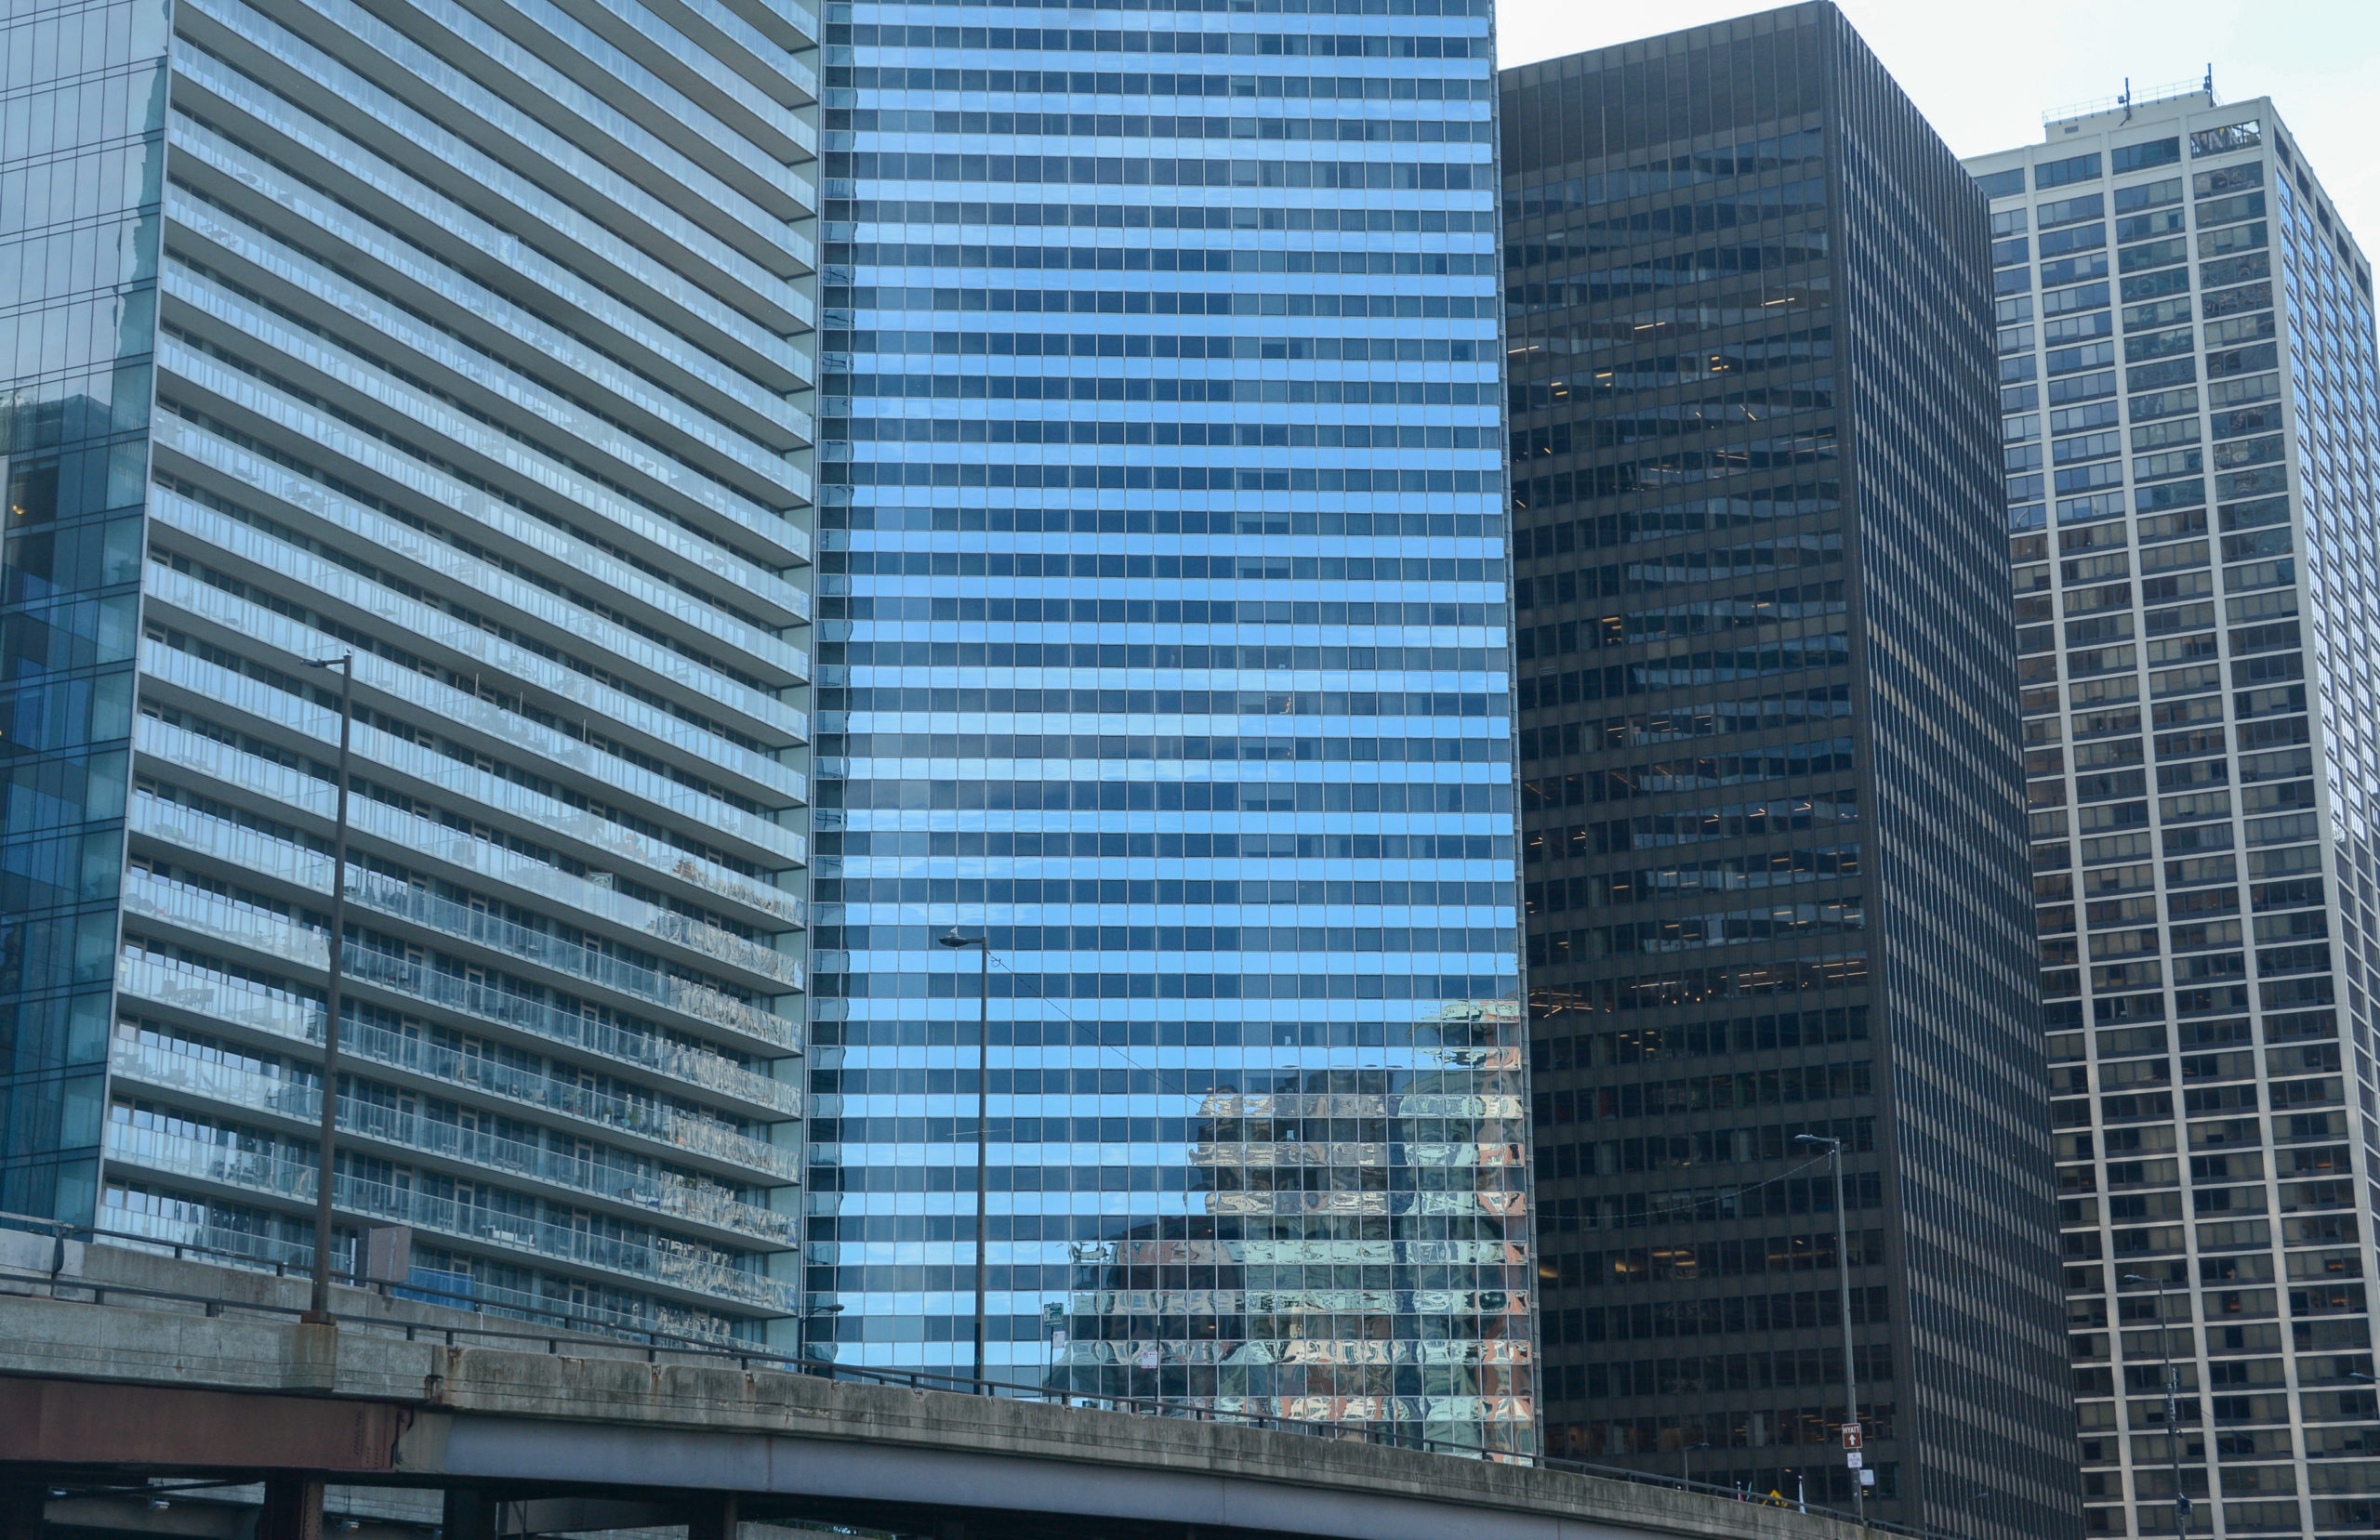 Nachdem der Mies kam: Form Follows Function prägt die Vertikalarchitektur in Chicago